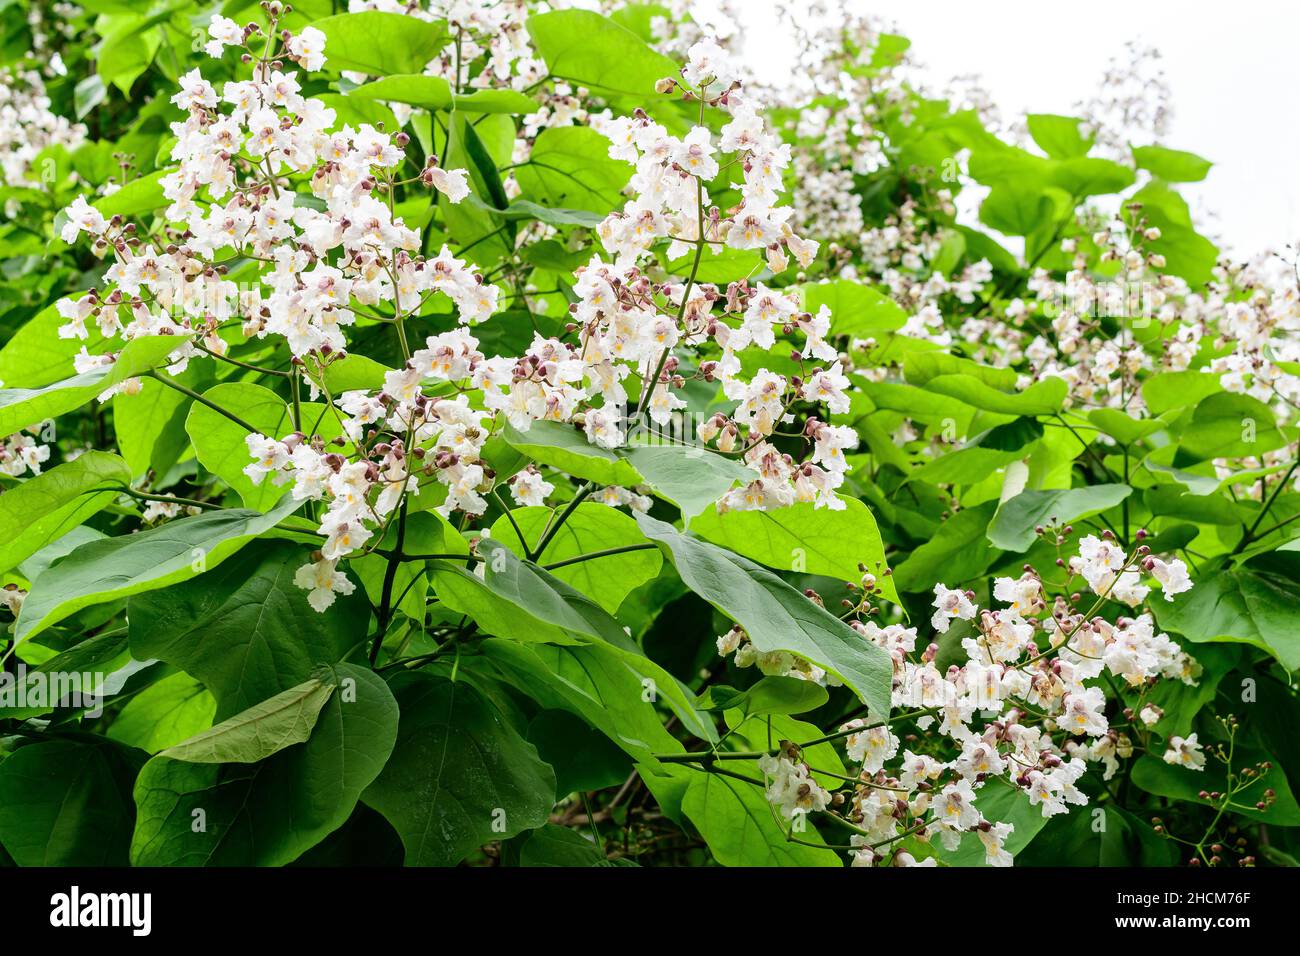 Grandes ramas con flores blancas decorativas y hojas verdes de la planta Catalpa bignonioides comúnmente conocida como catalpa meridional, cigarre o ser indio Foto de stock